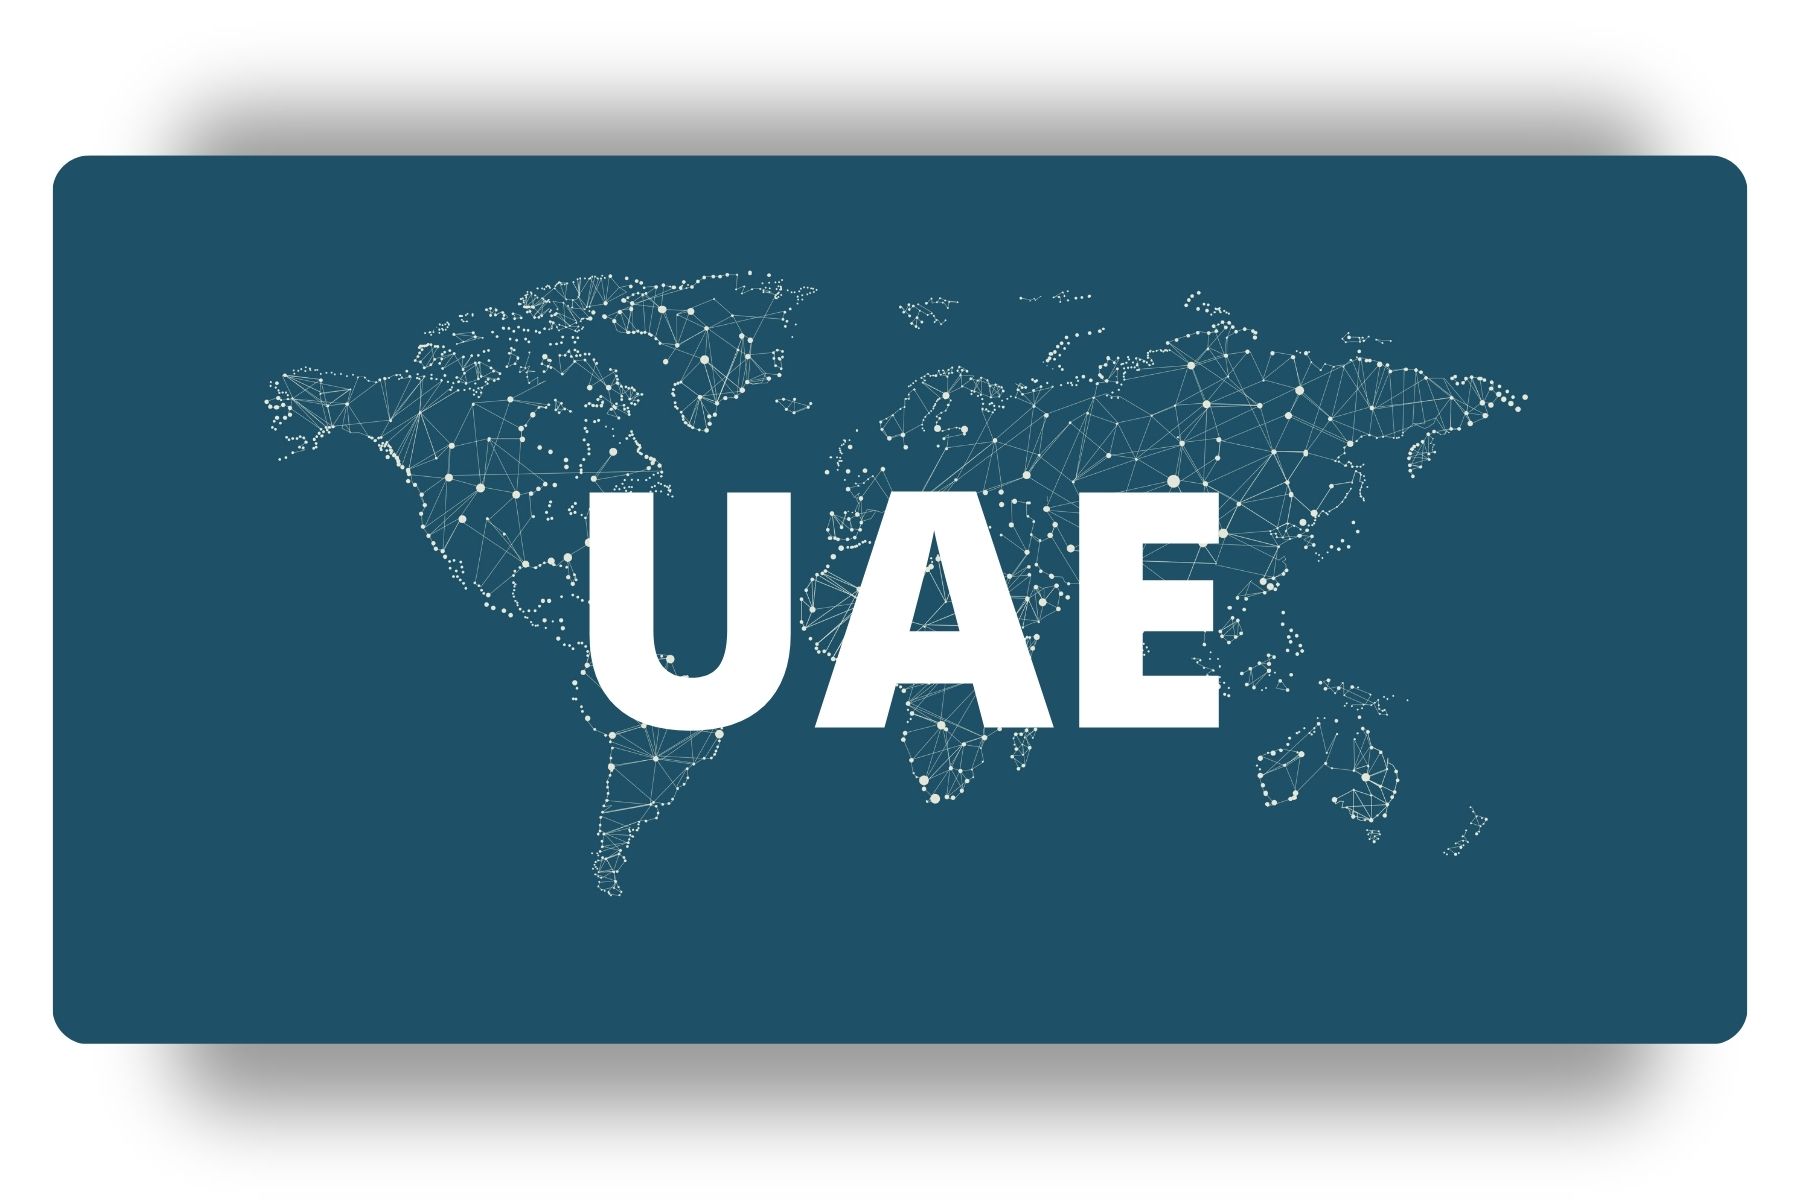 UAE Employee Advocacy Leaderboard | DSMN8